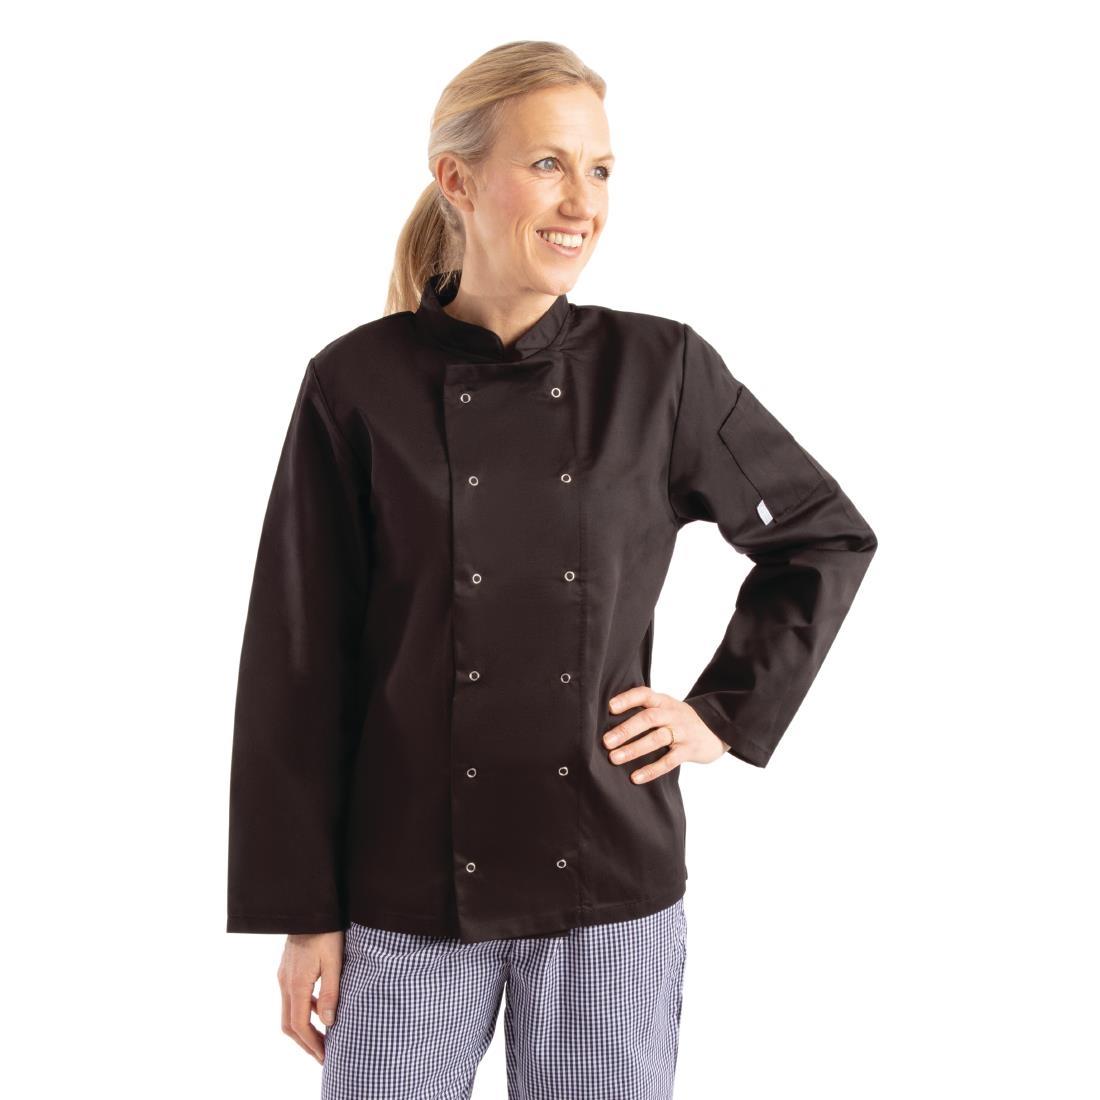 Whites Vegas Unisex Chefs Jacket Long Sleeve Black M - A438-M  - 11